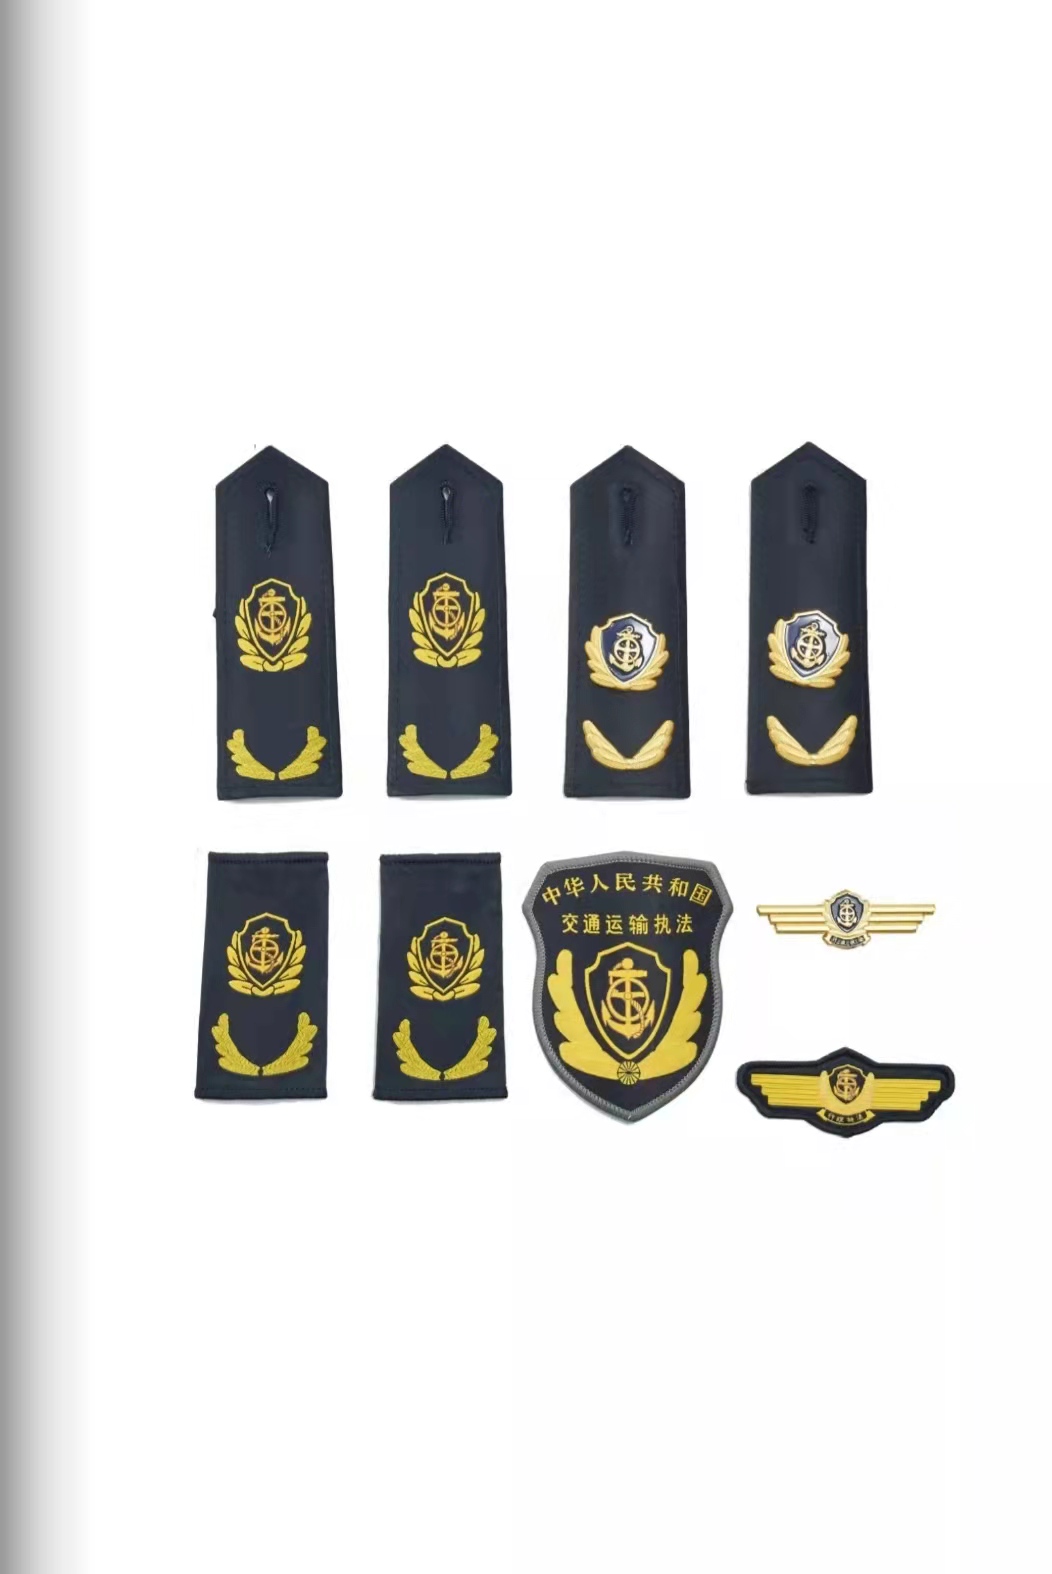 昌都六部门统一交通运输执法服装标志